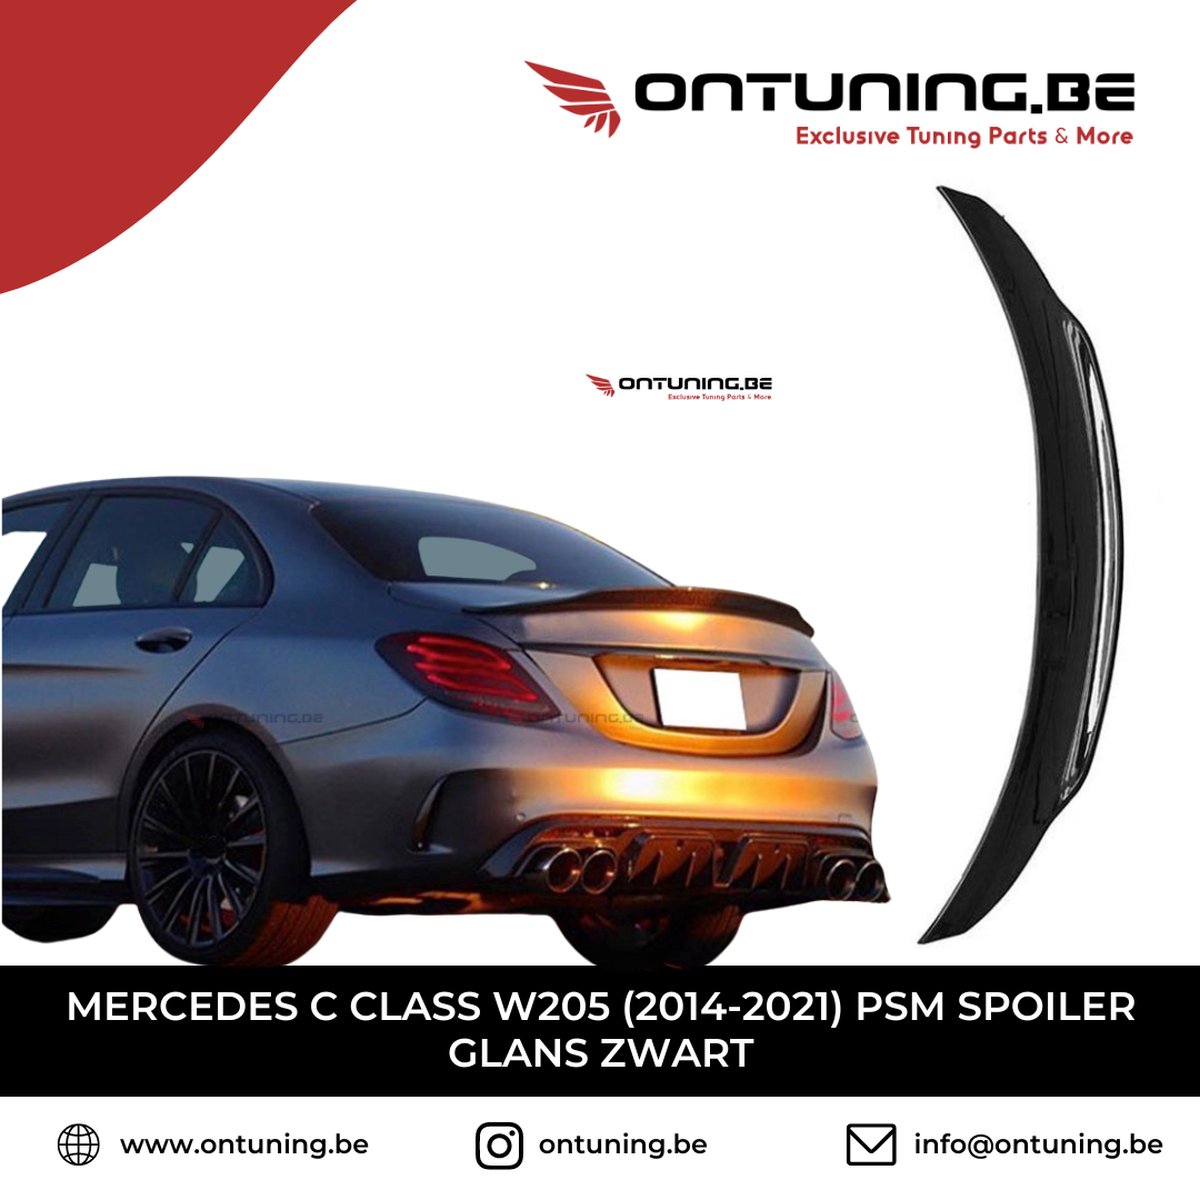 Mercedes C Class W205 (2014-2021) PSM Spoiler Glans Zwart